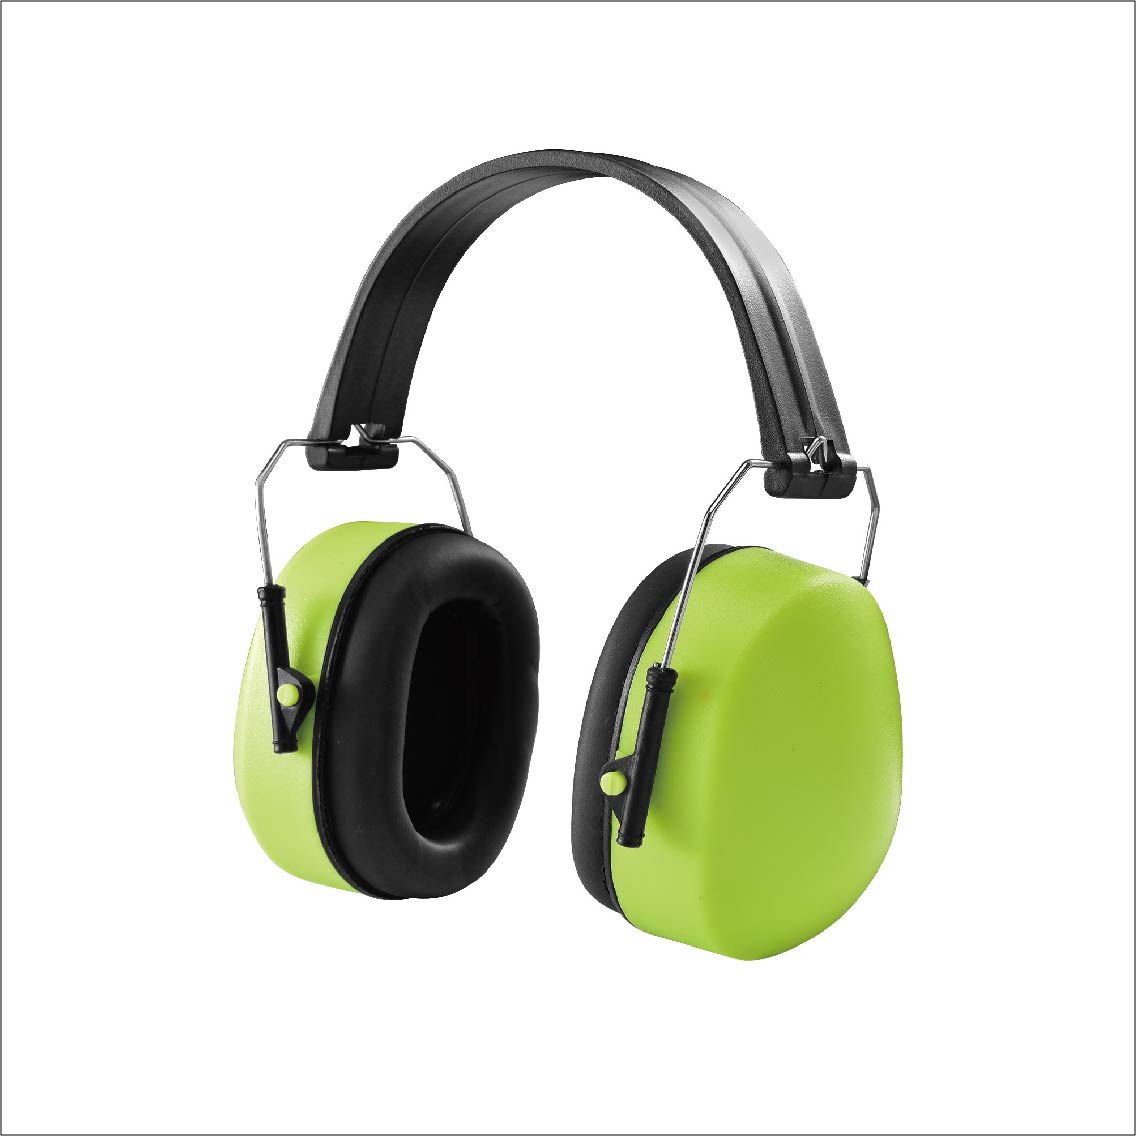  CE EN 352 Soundproof ABS Folding Ear Muff